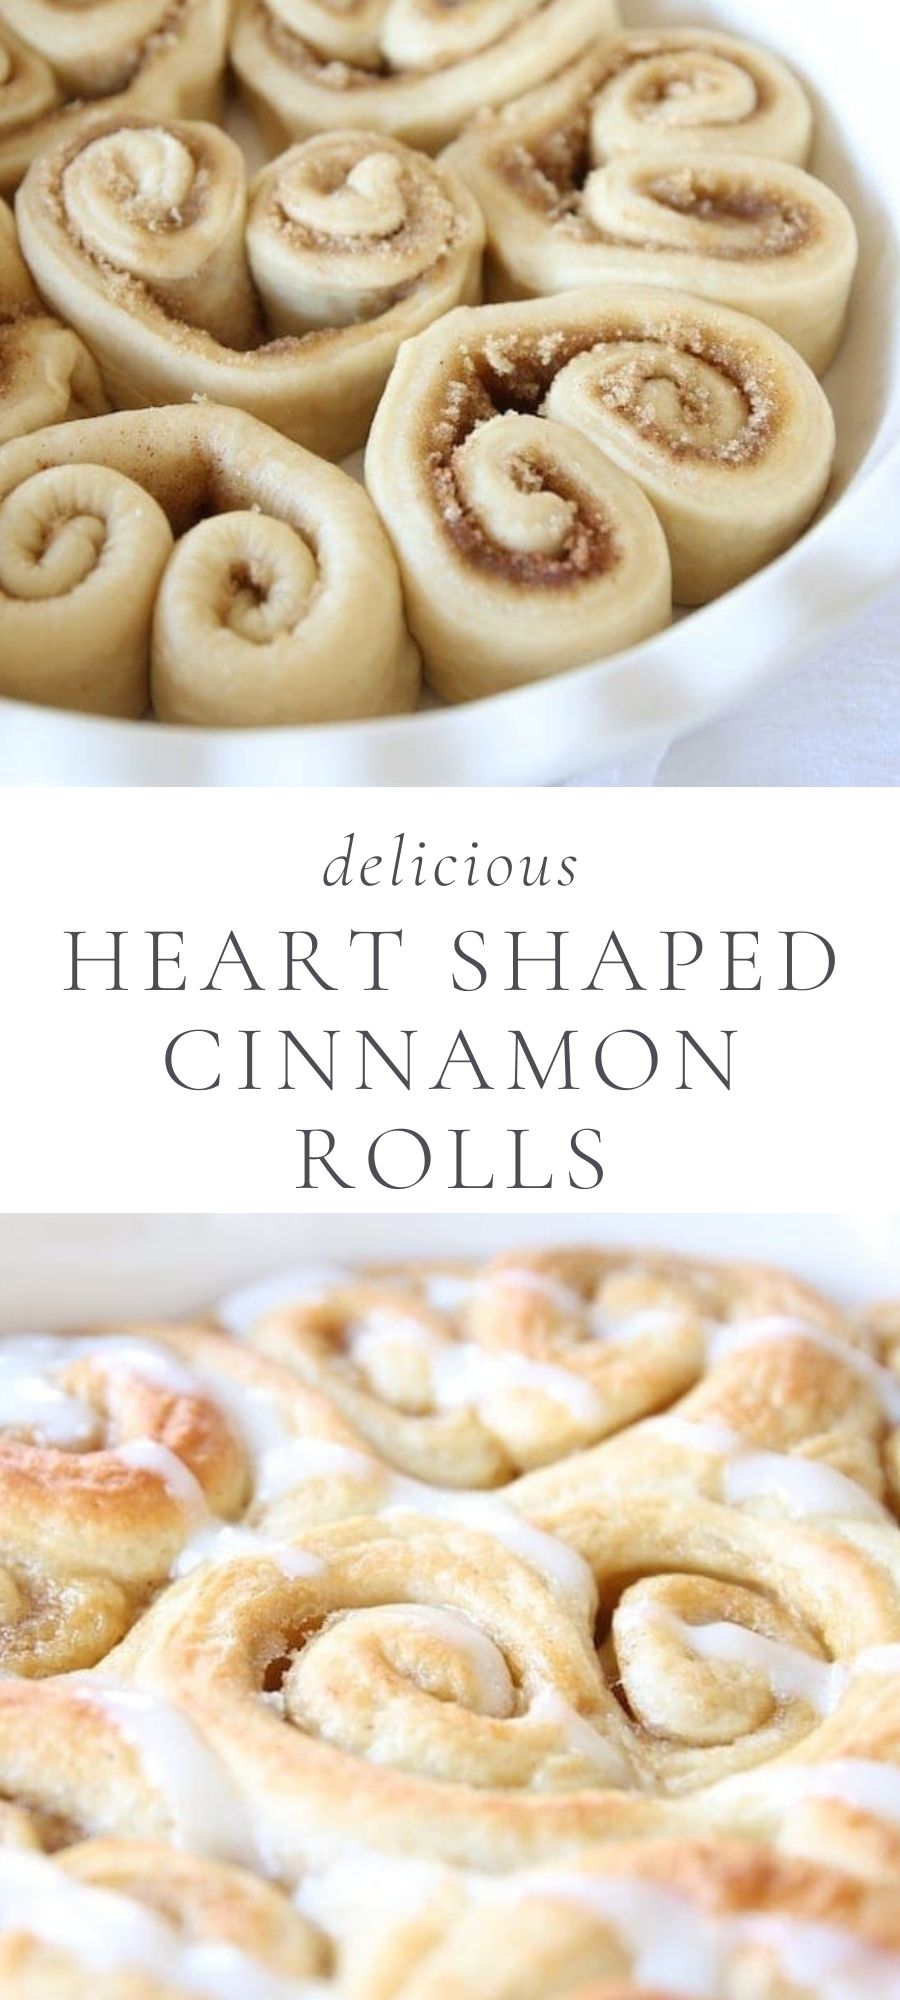 heart shaped cinnamon rolls in a baking pain